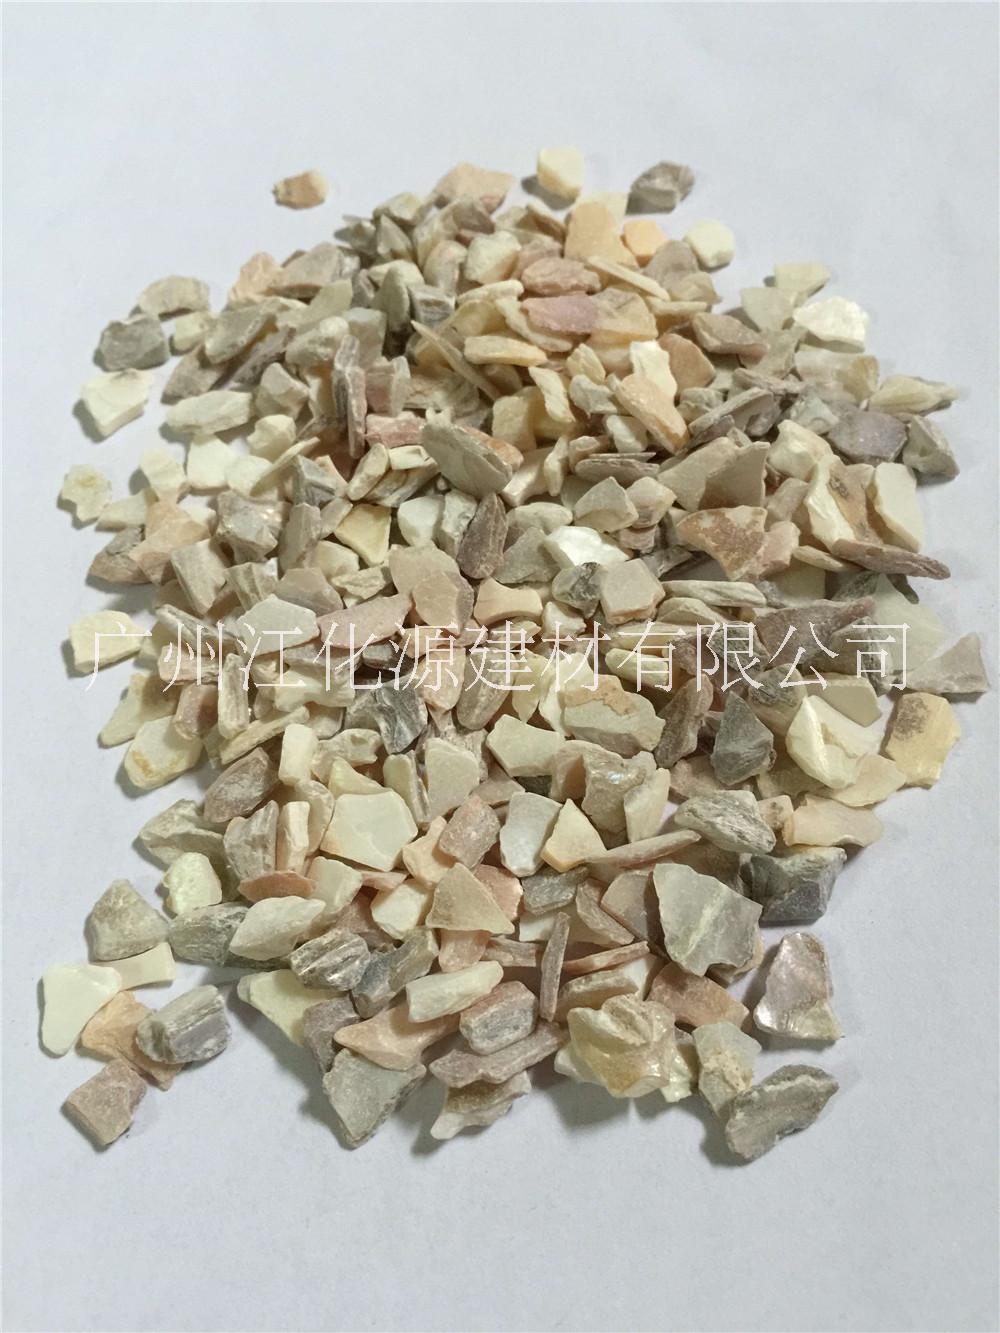 广州全国贝壳颗粒厂家直销  大量供应人造石、石英石原材料贝壳颗粒